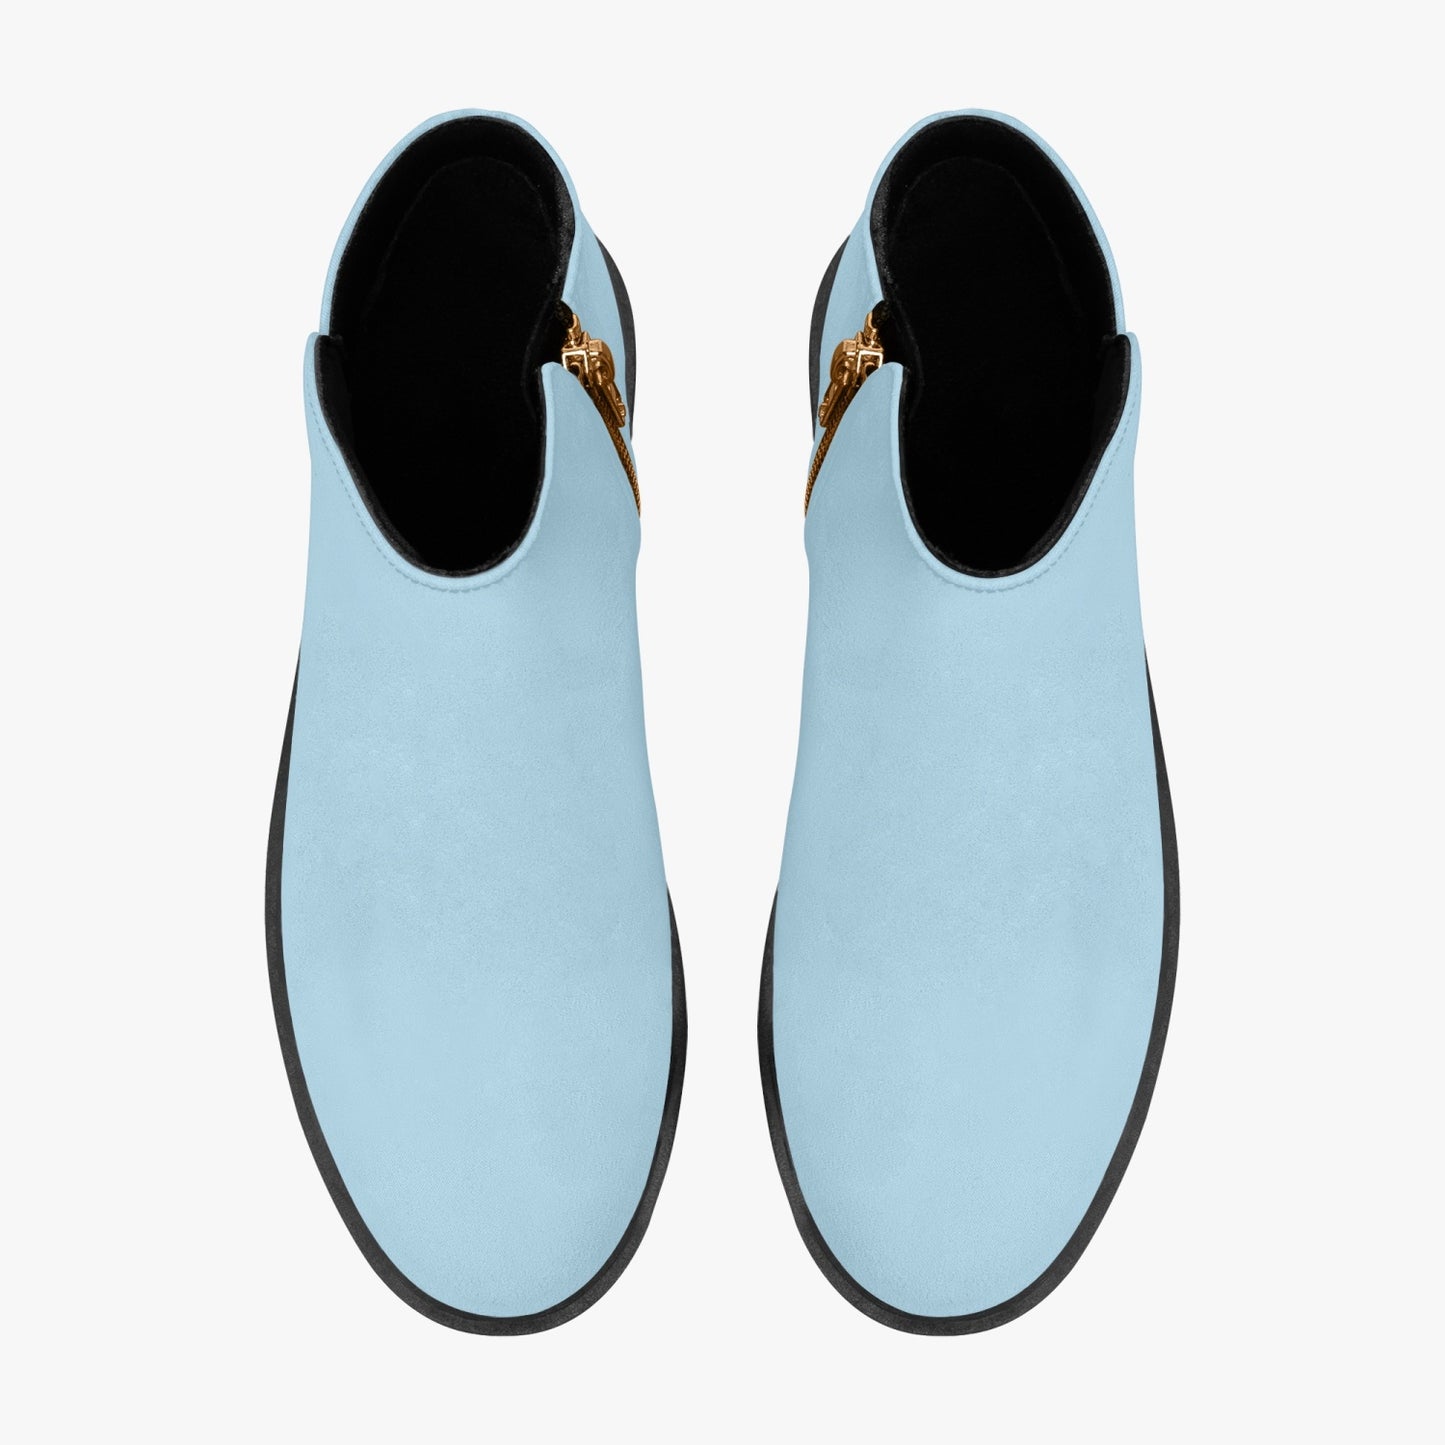 Pastel Blue Zipper Unisex Suede Ankle Boots